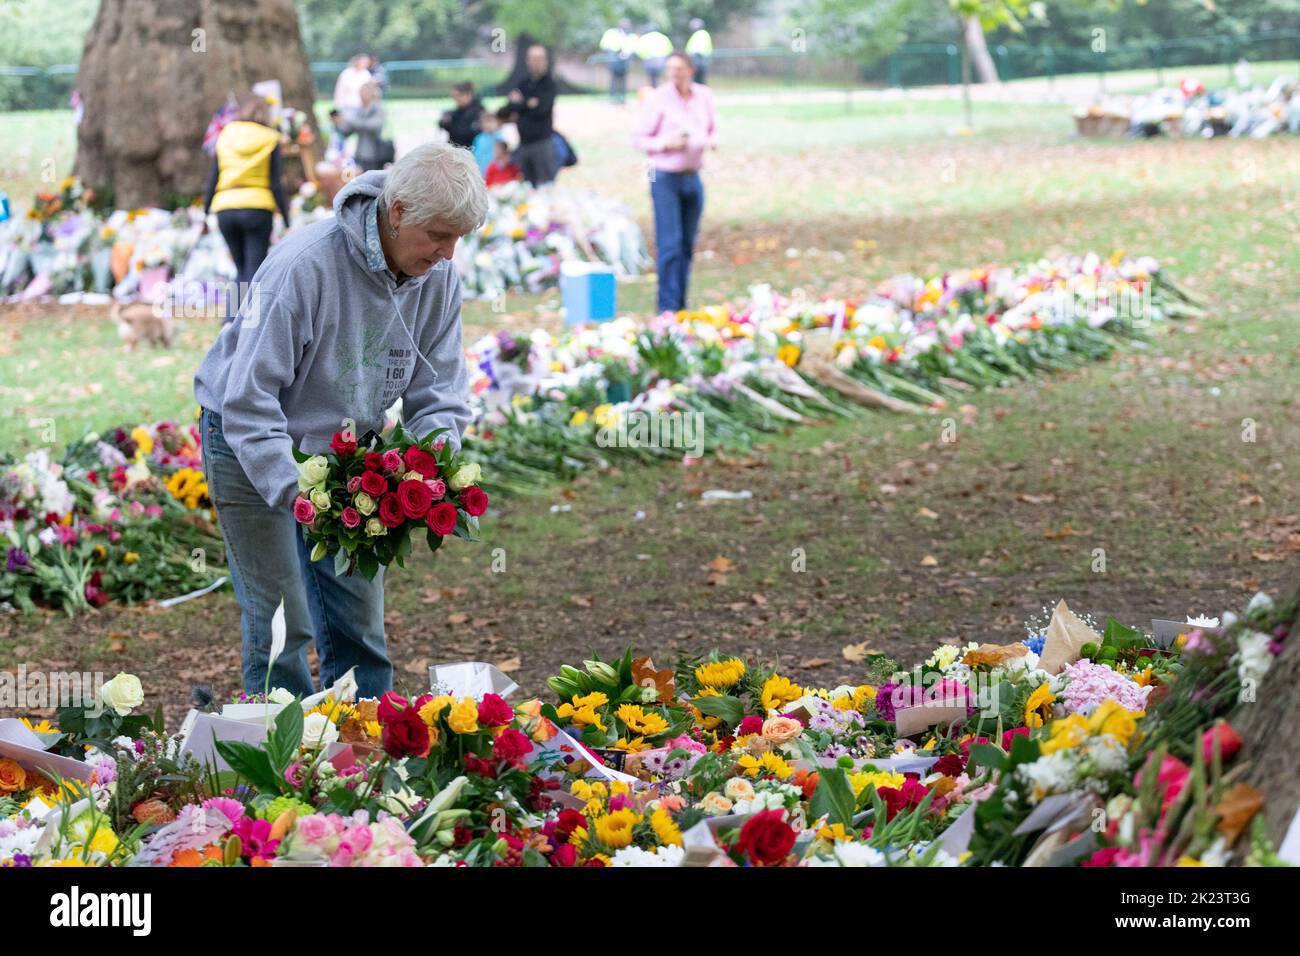 La nazione continua a piangere per la perdita della Regina Elisabetta II di giovedì. Immagine scattata il 11th settembre 2022. © Belinda Jiao jiao.bilin@gmail.com 0 Foto Stock